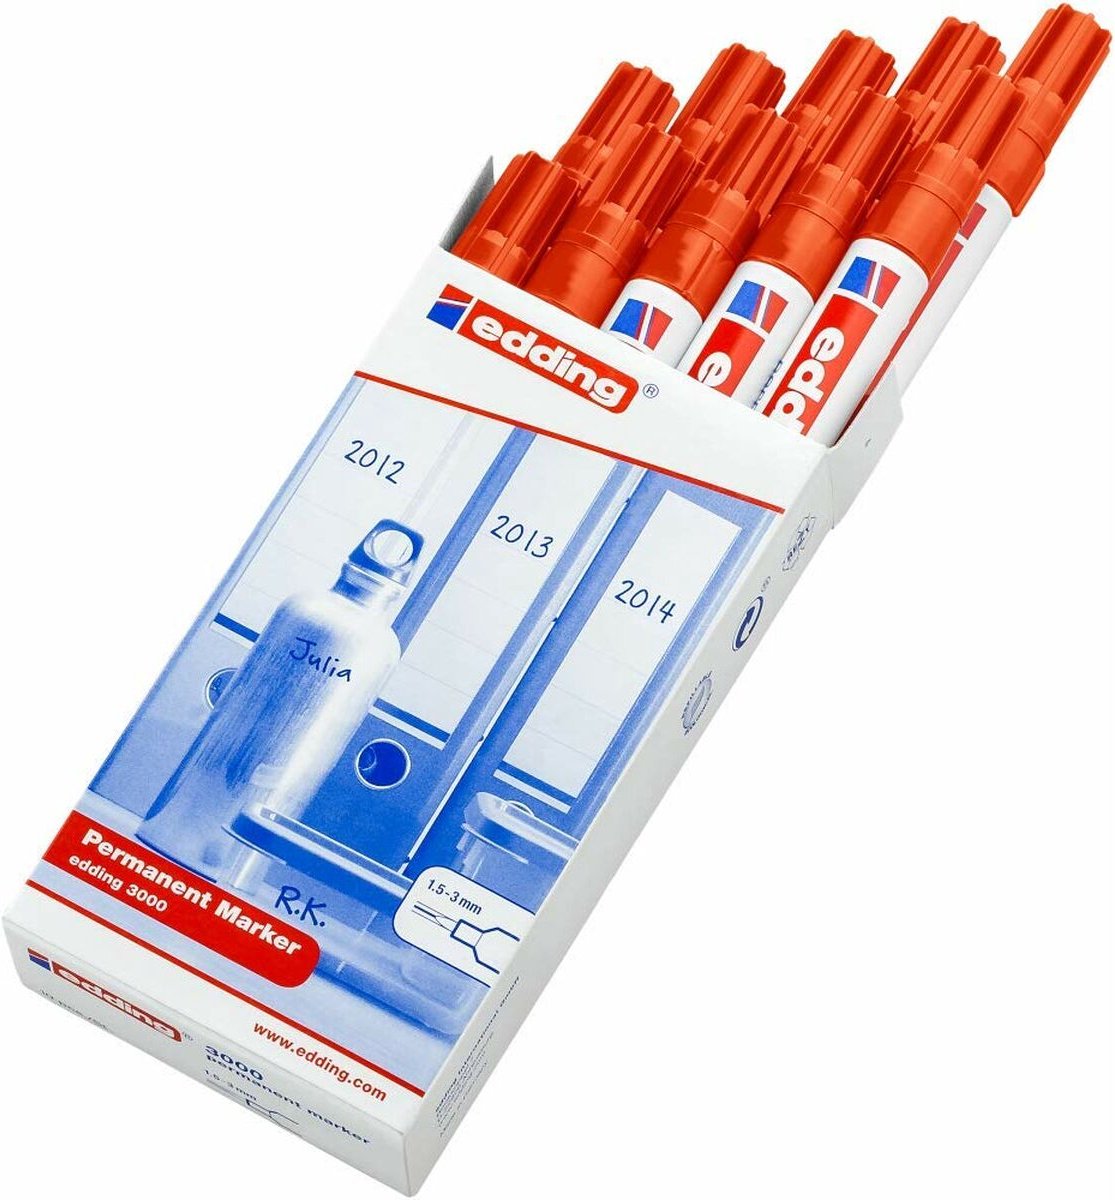 1 stylos marqueur feutre indélébile orange 140s 0,3mm ultra fin à encre  permanente edding pour rétroprojection cd dvd a24 - Un grand marché